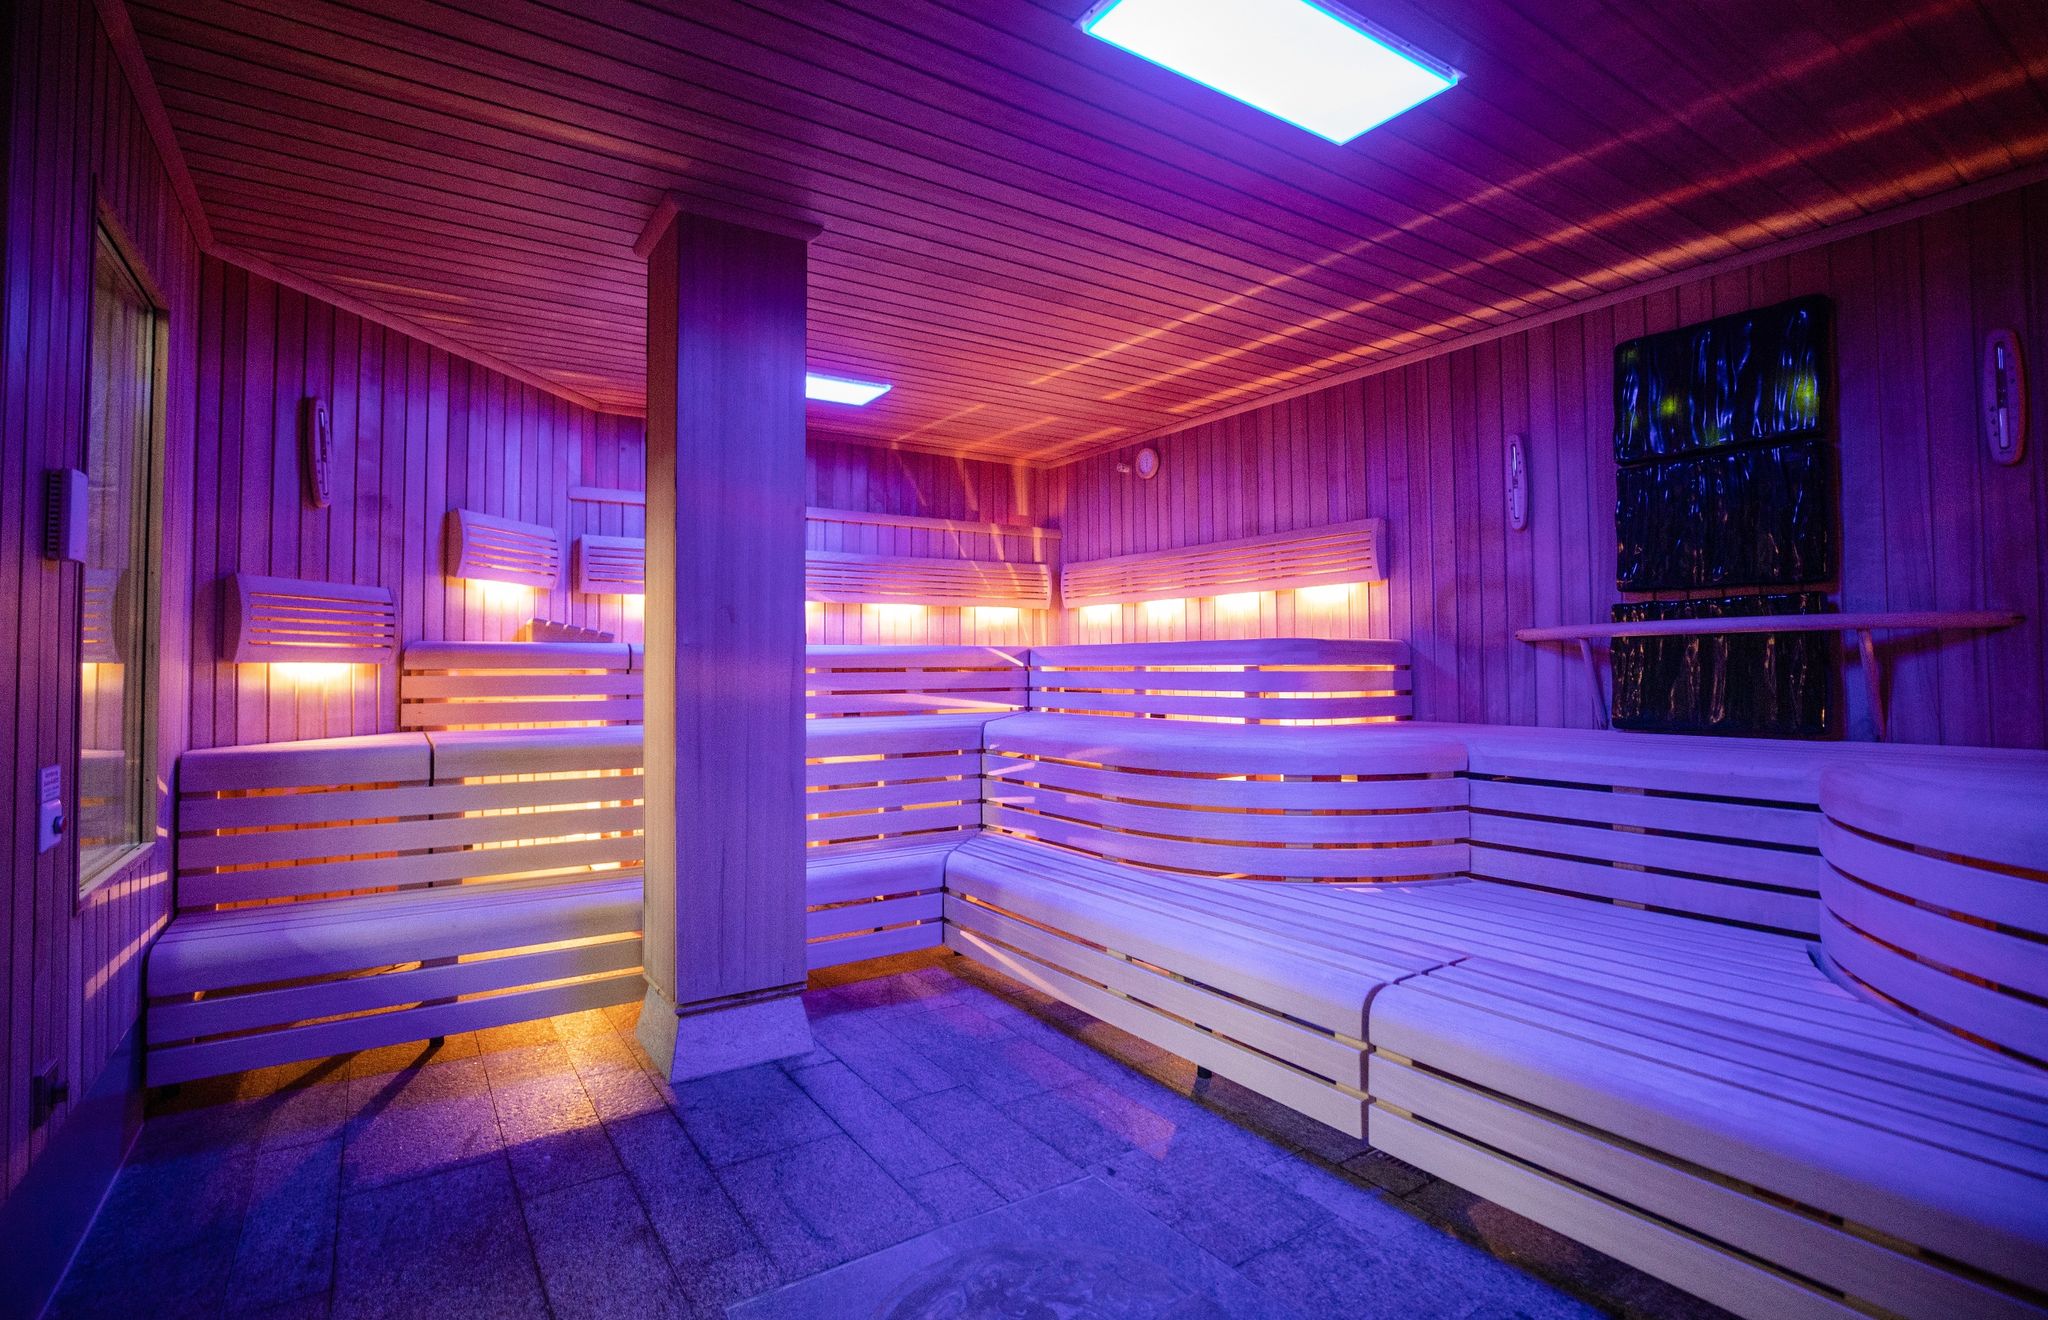 Blick in eine Sauna der SchwabenQuellen Stuttgart. Der Saunabesuch wird wegen der Energiekrise zum Politikum.